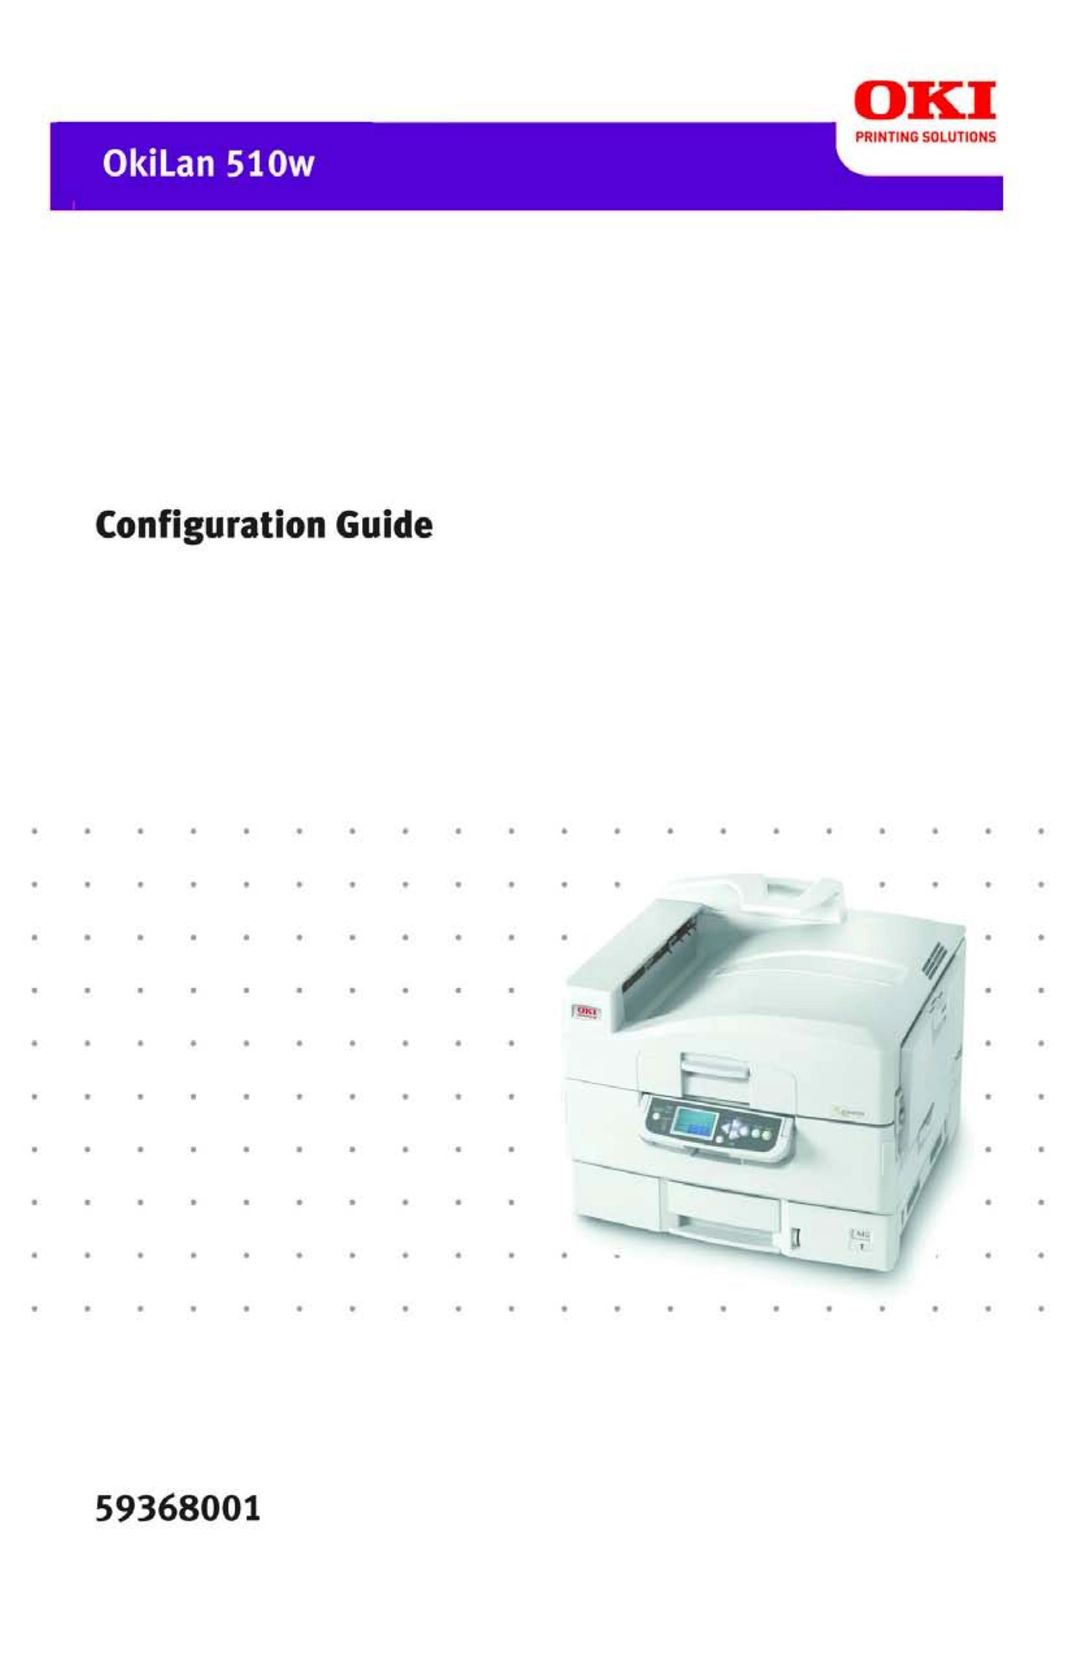 Oki 510W All in One Printer User Manual